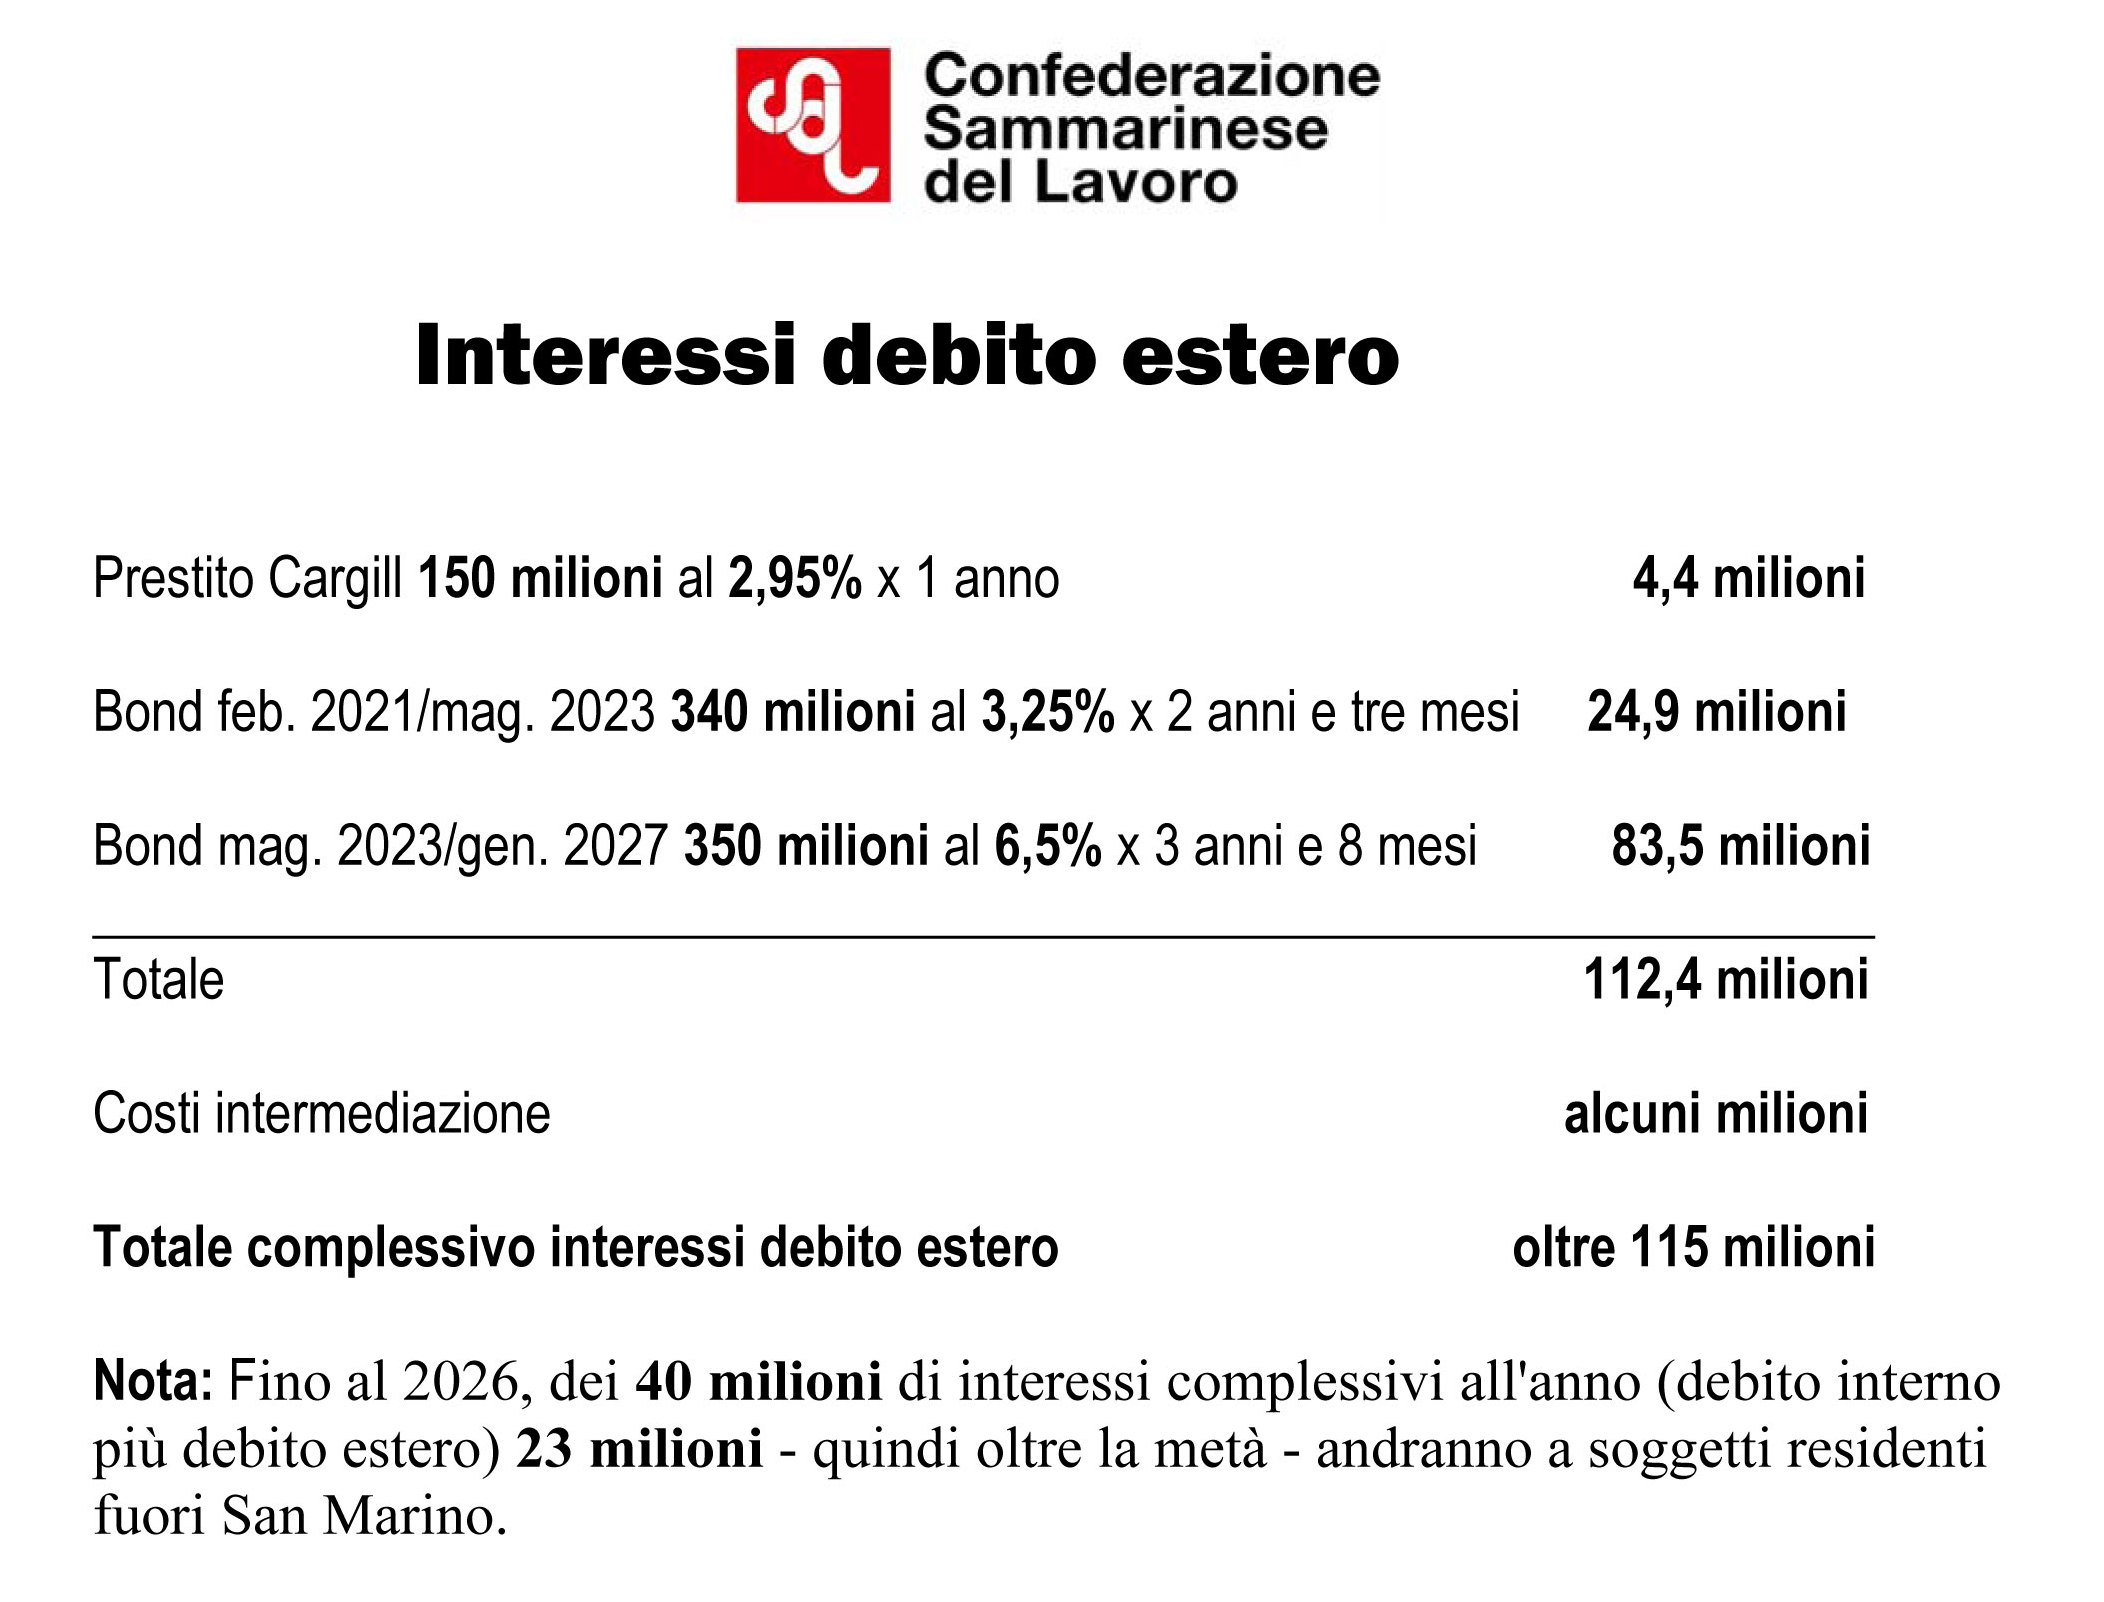 San Marino. Finanze, CSdL lancia l’allarme: “Sono oltre 115 milioni gli interessi sul debito estero”